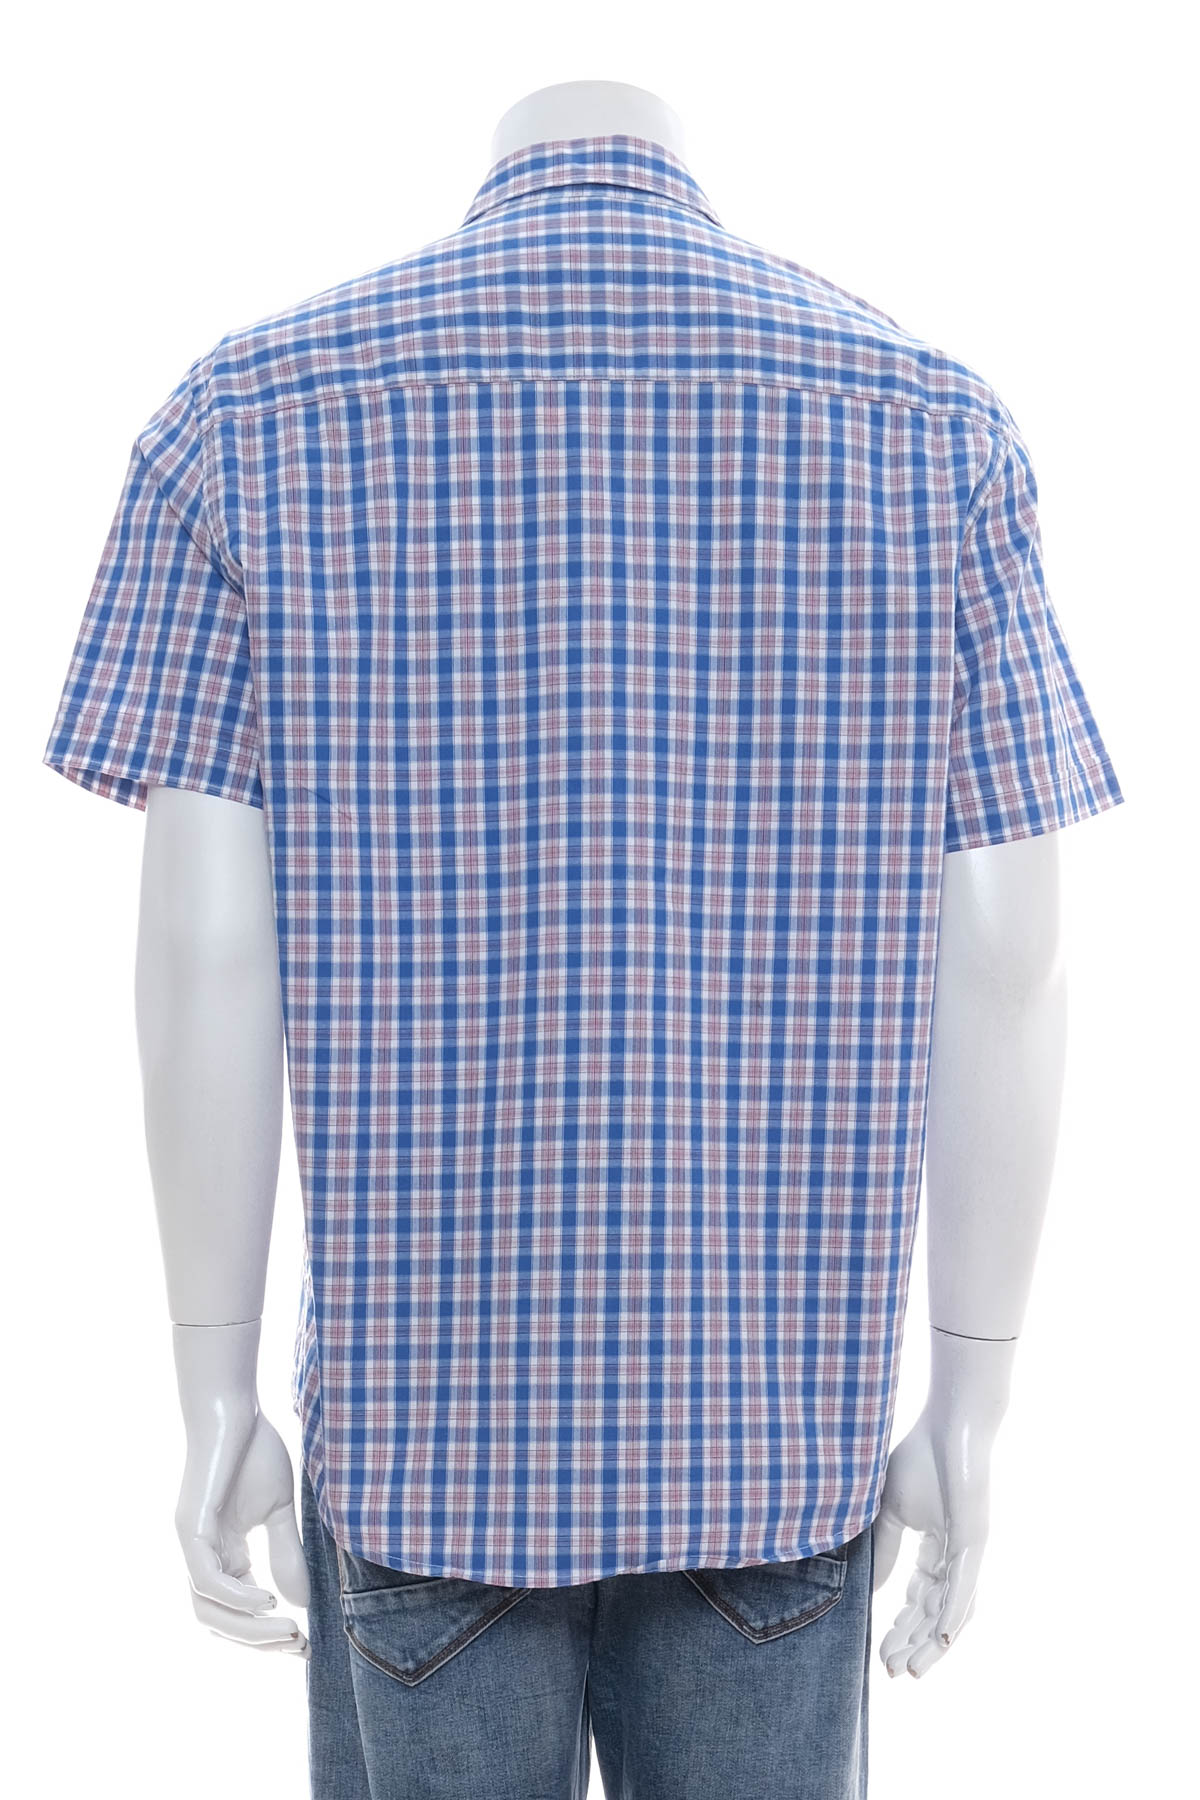 Ανδρικό πουκάμισο - Camargue - 1